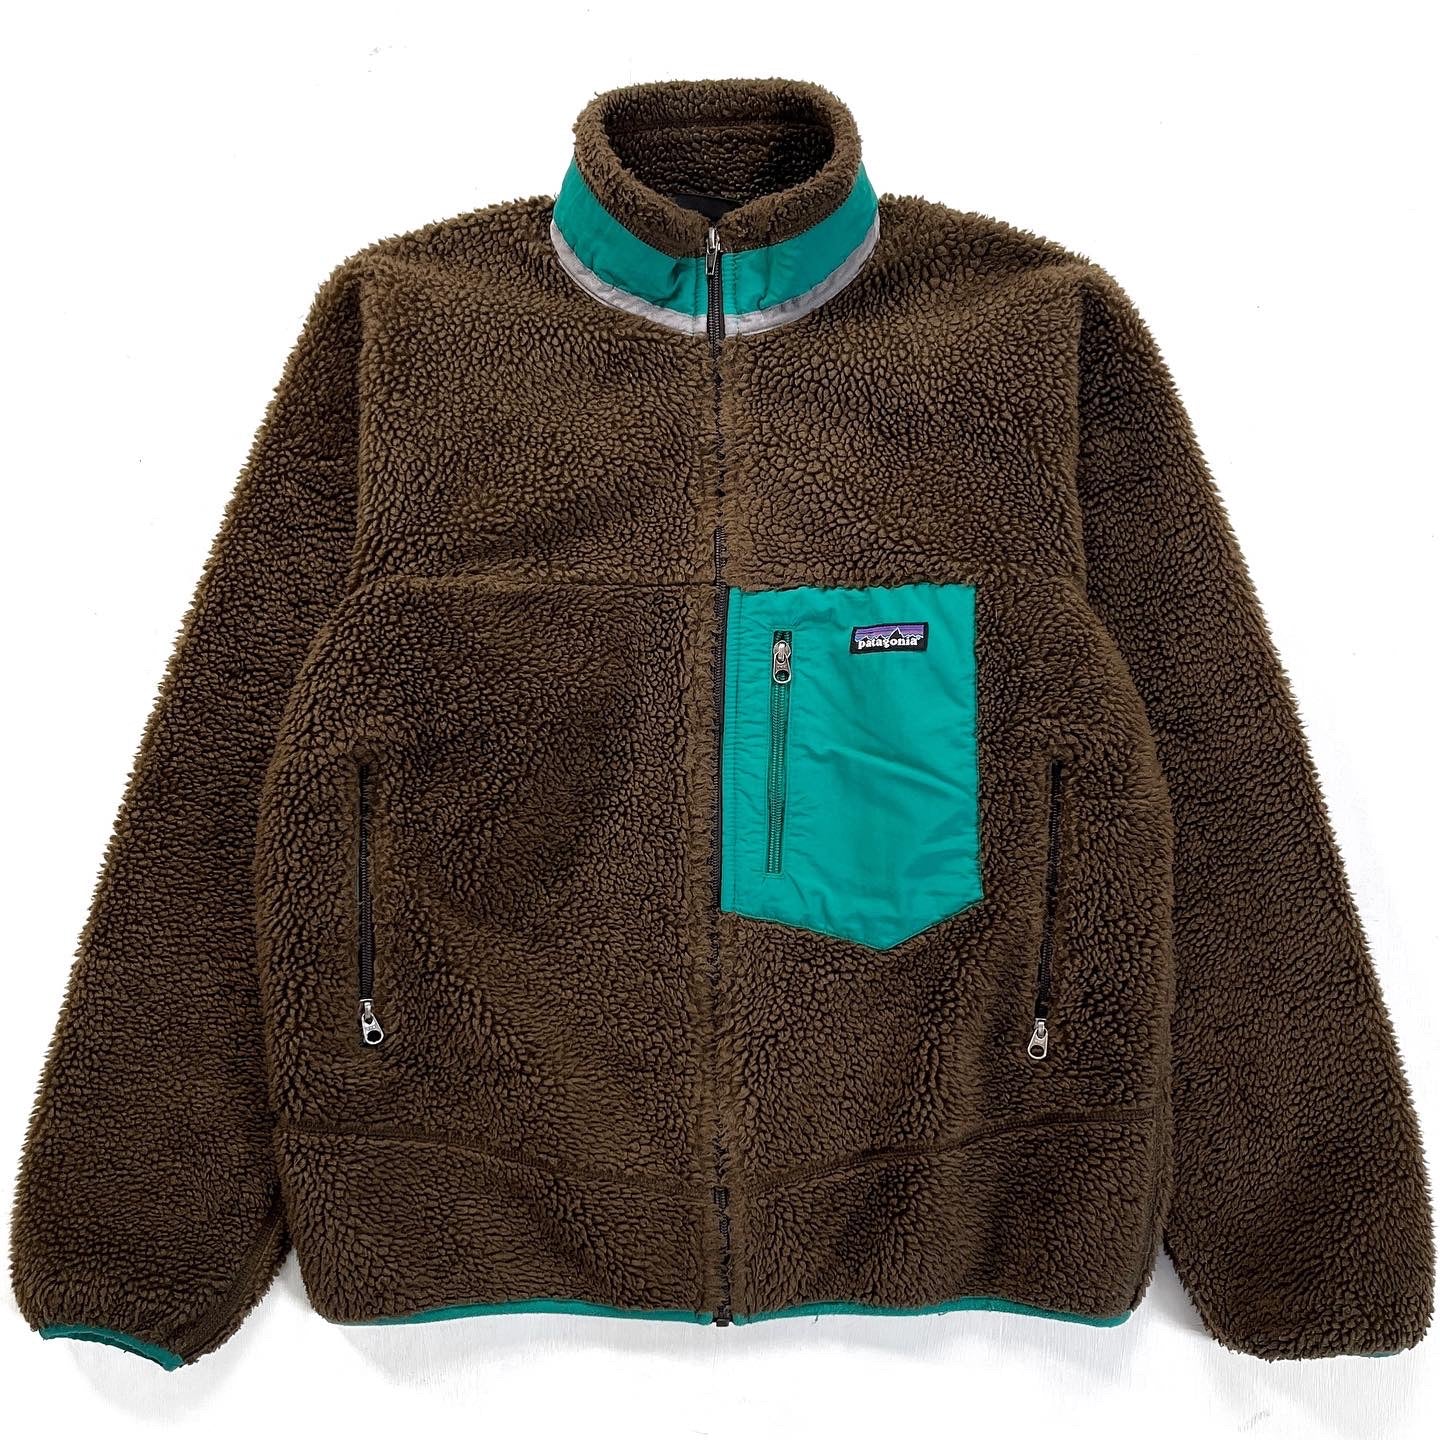 2012 Patagonia Classic Retro-X Fleece Jacket, Dark Walnut (M)